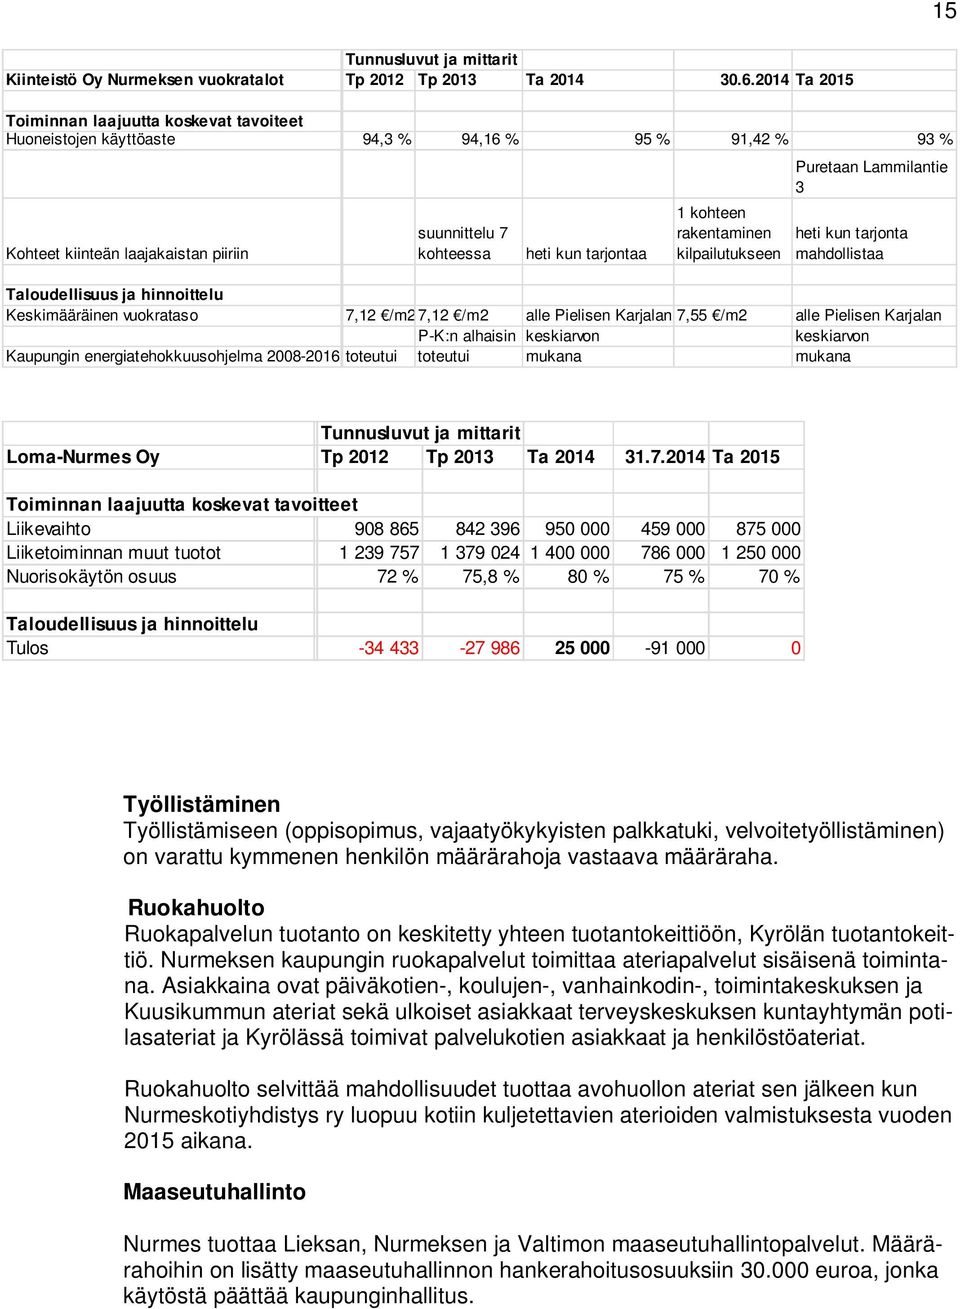 rakentaminen kilpailutukseen Puretaan Lammilantie 3 heti kun tarjonta mahdollistaa Taloudellisuus ja hinnoittelu Keskimääräinen vuokrataso 7,12 /m27,12 /m2 alle Pielisen Karjalan 7,55 /m2 alle